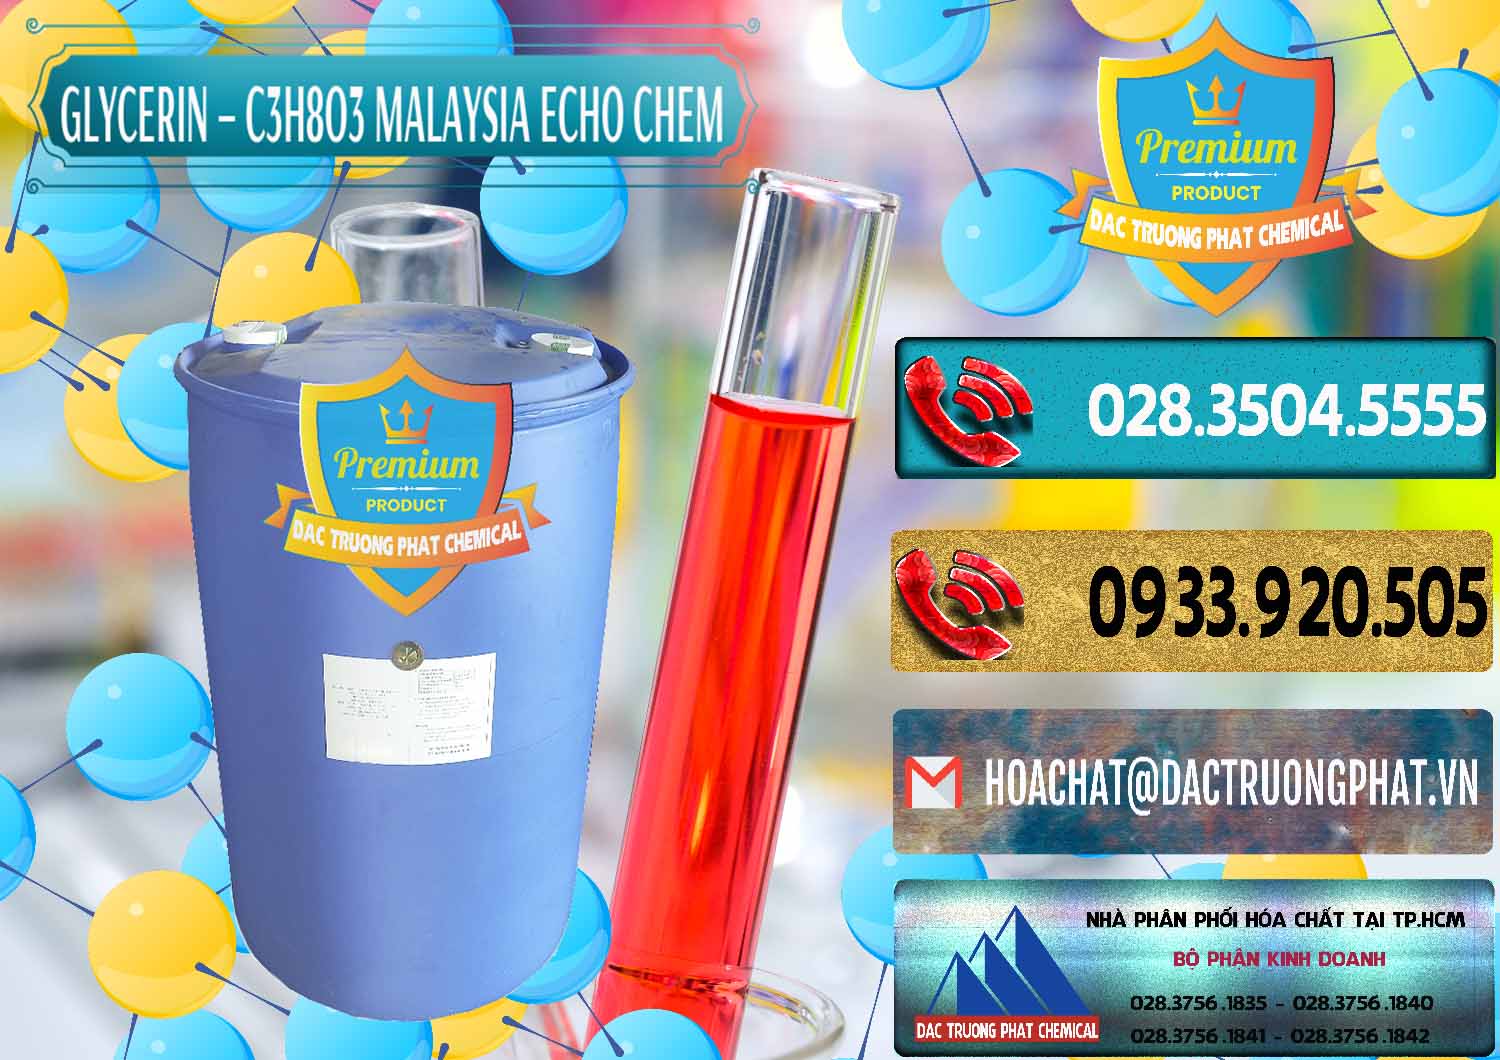 Bán ( phân phối ) Glycerin – C3H8O3 99.7% Echo Chem Malaysia - 0273 - Công ty kinh doanh - phân phối hóa chất tại TP.HCM - hoachatdetnhuom.com